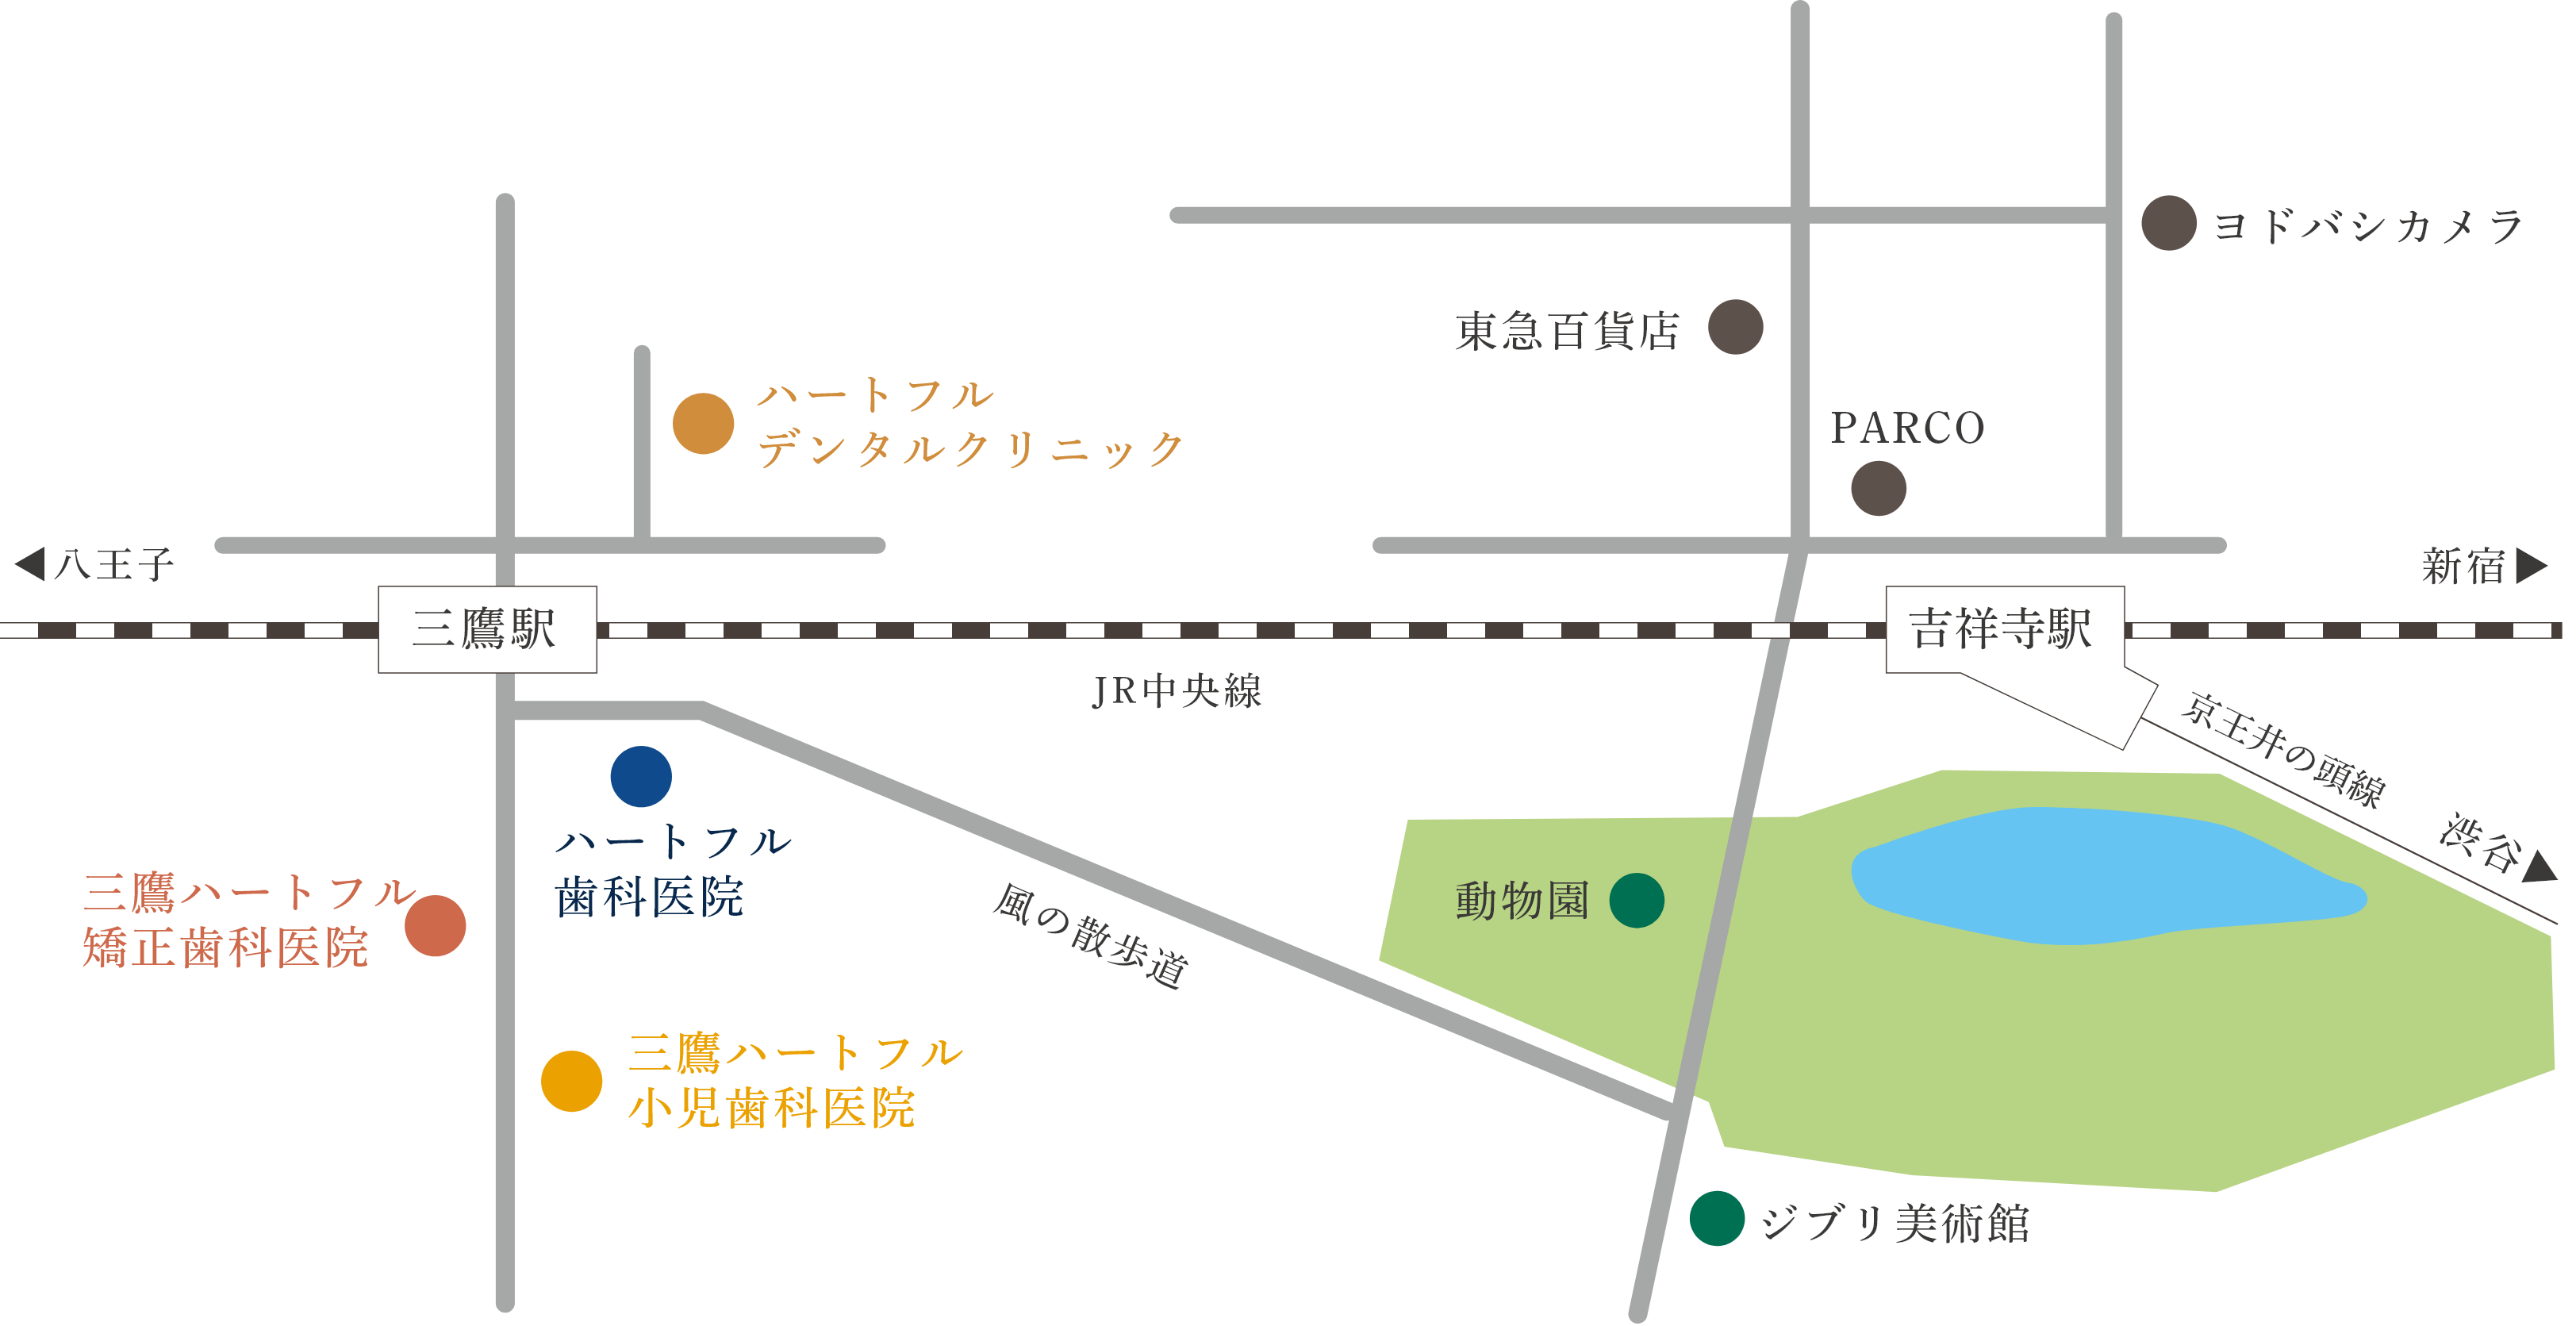 吉祥寺の隣の駅、三鷹駅が勤務地になります。